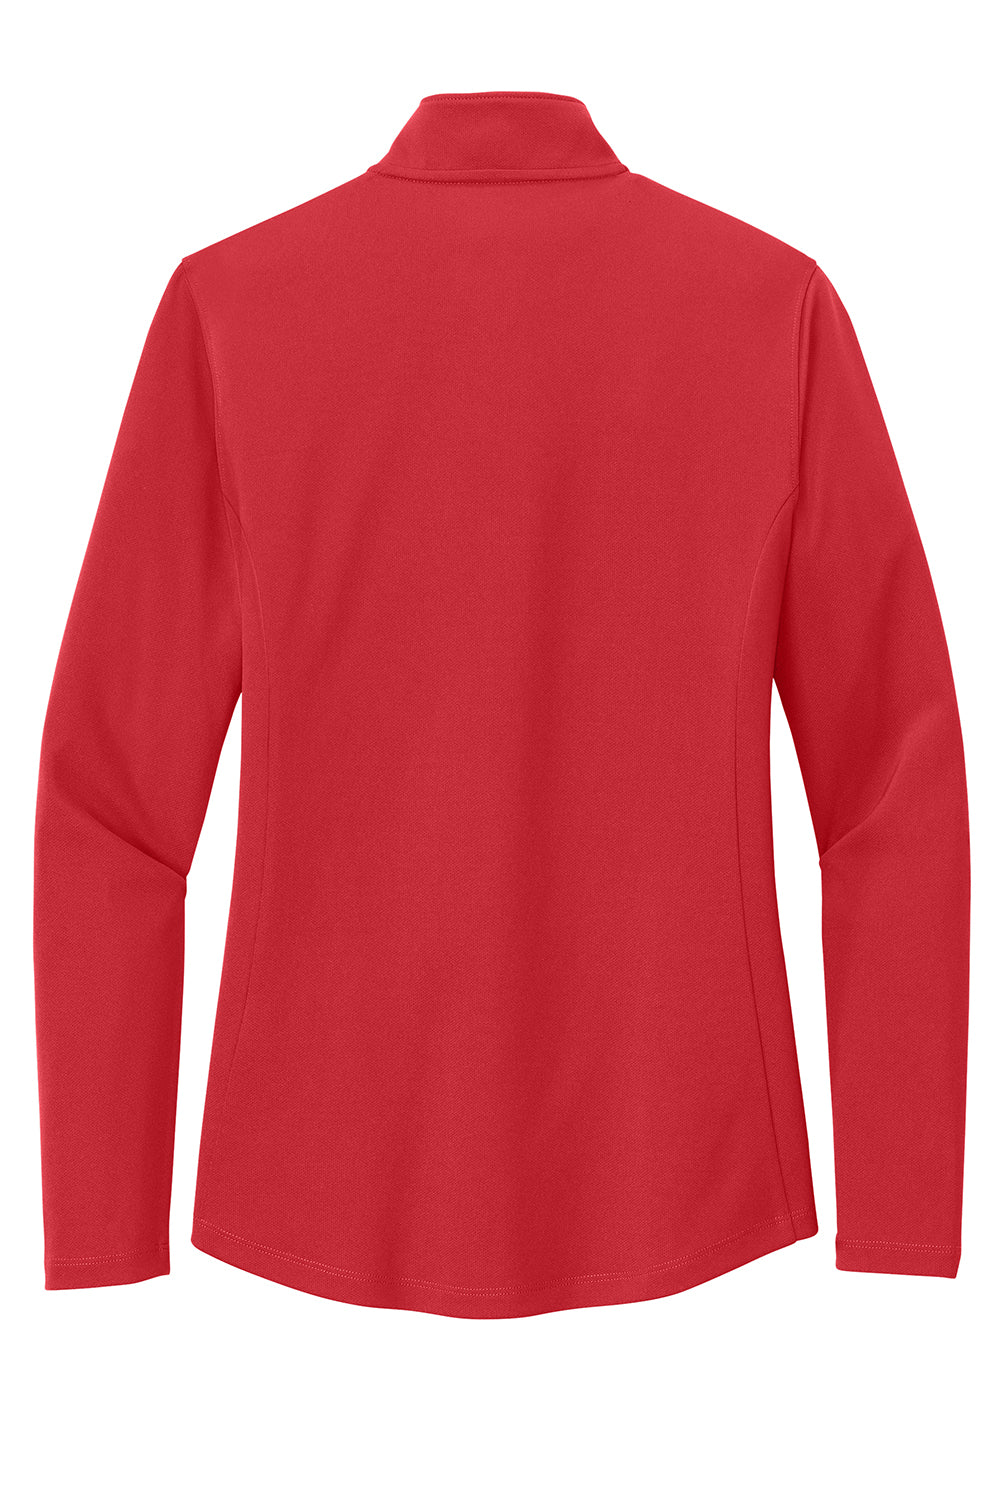 Port Authority LK112 Womens Dry Zone UV Micro Mesh 1/4 Zip Sweatshirt Rich Red Flat Back